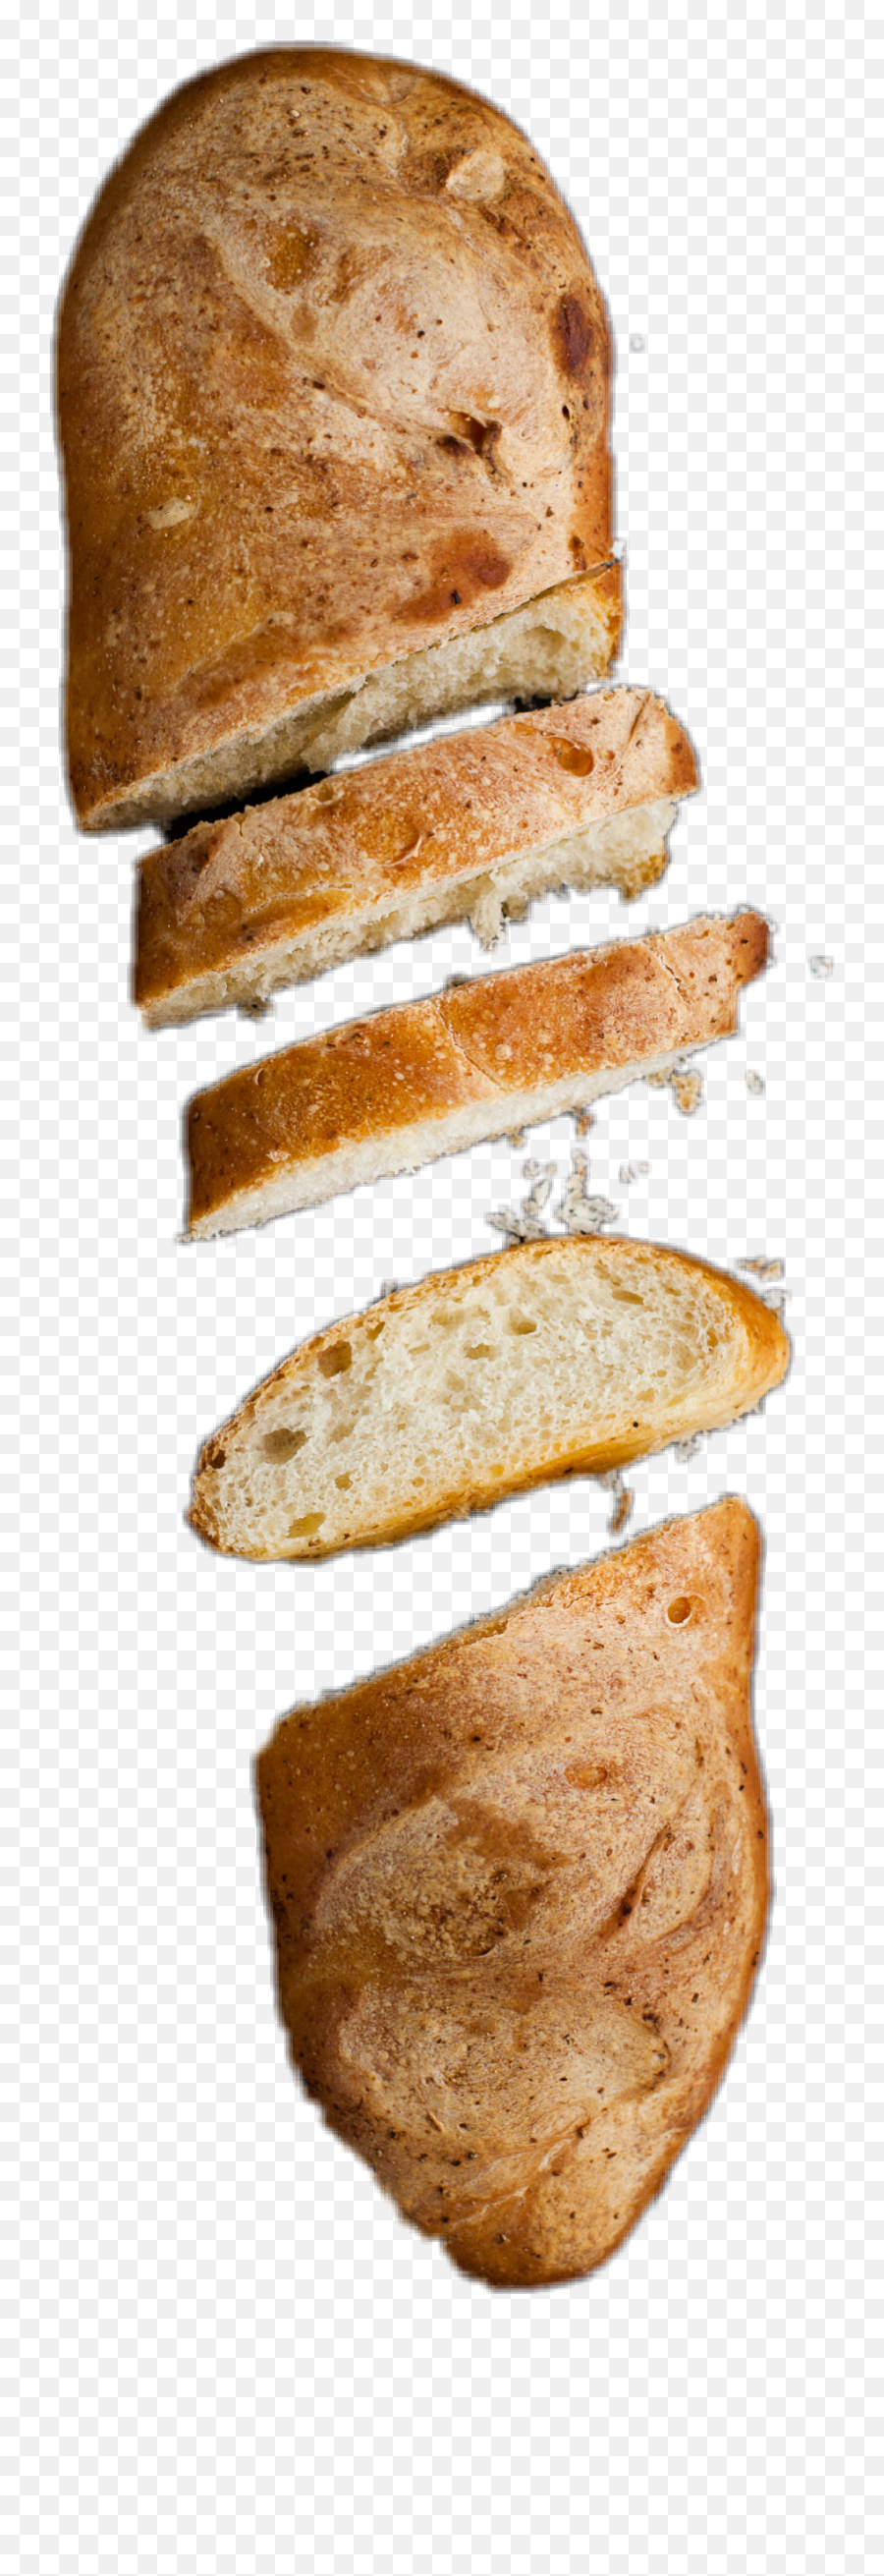 The Most Edited - Bread Emoji,Loaf Of Bread Emoji